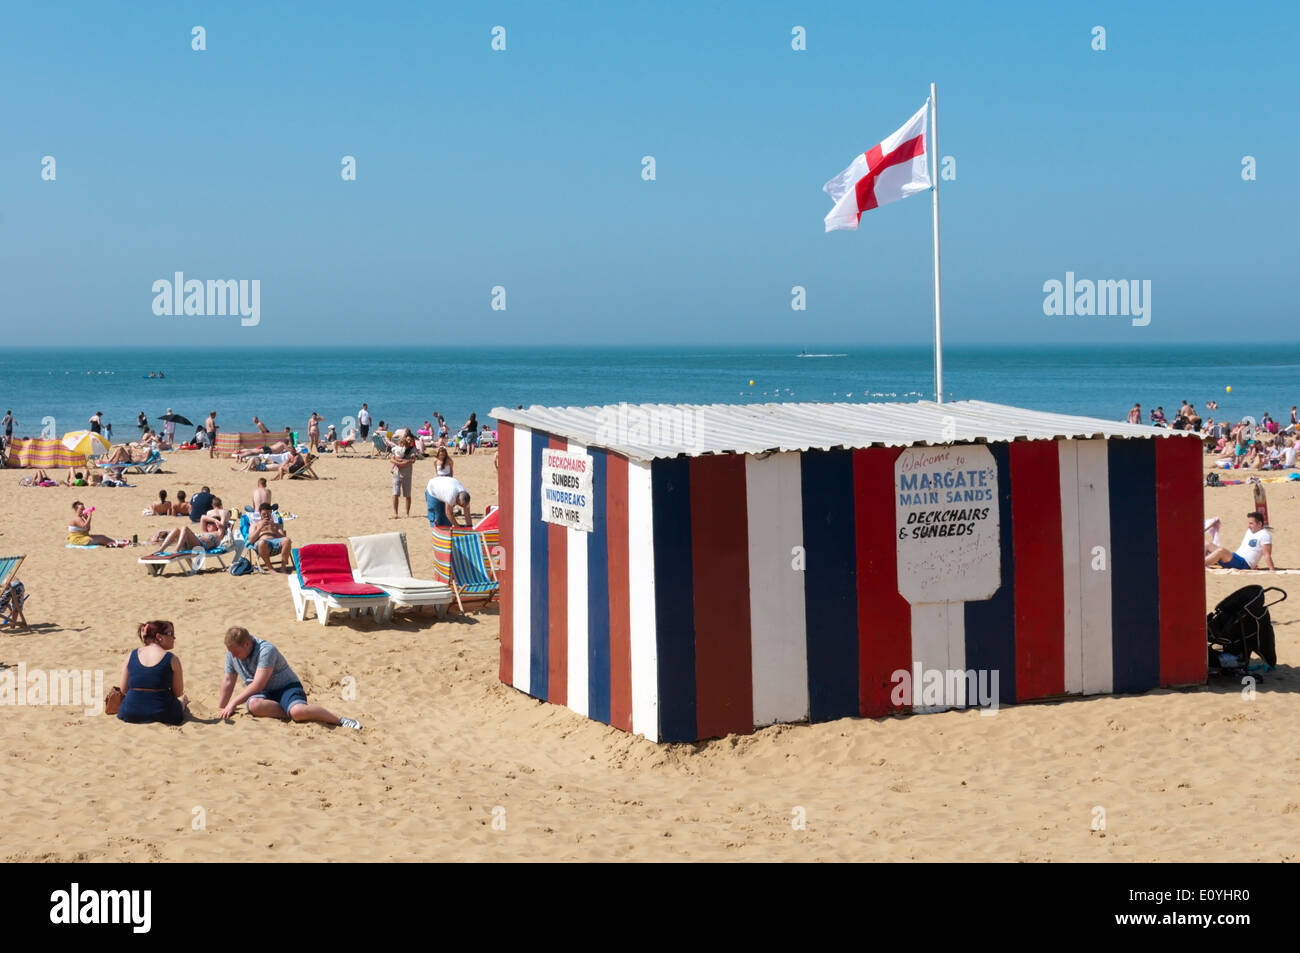 Liegestuhl-Verleih am Strand von Margate, Kent. Stockfoto